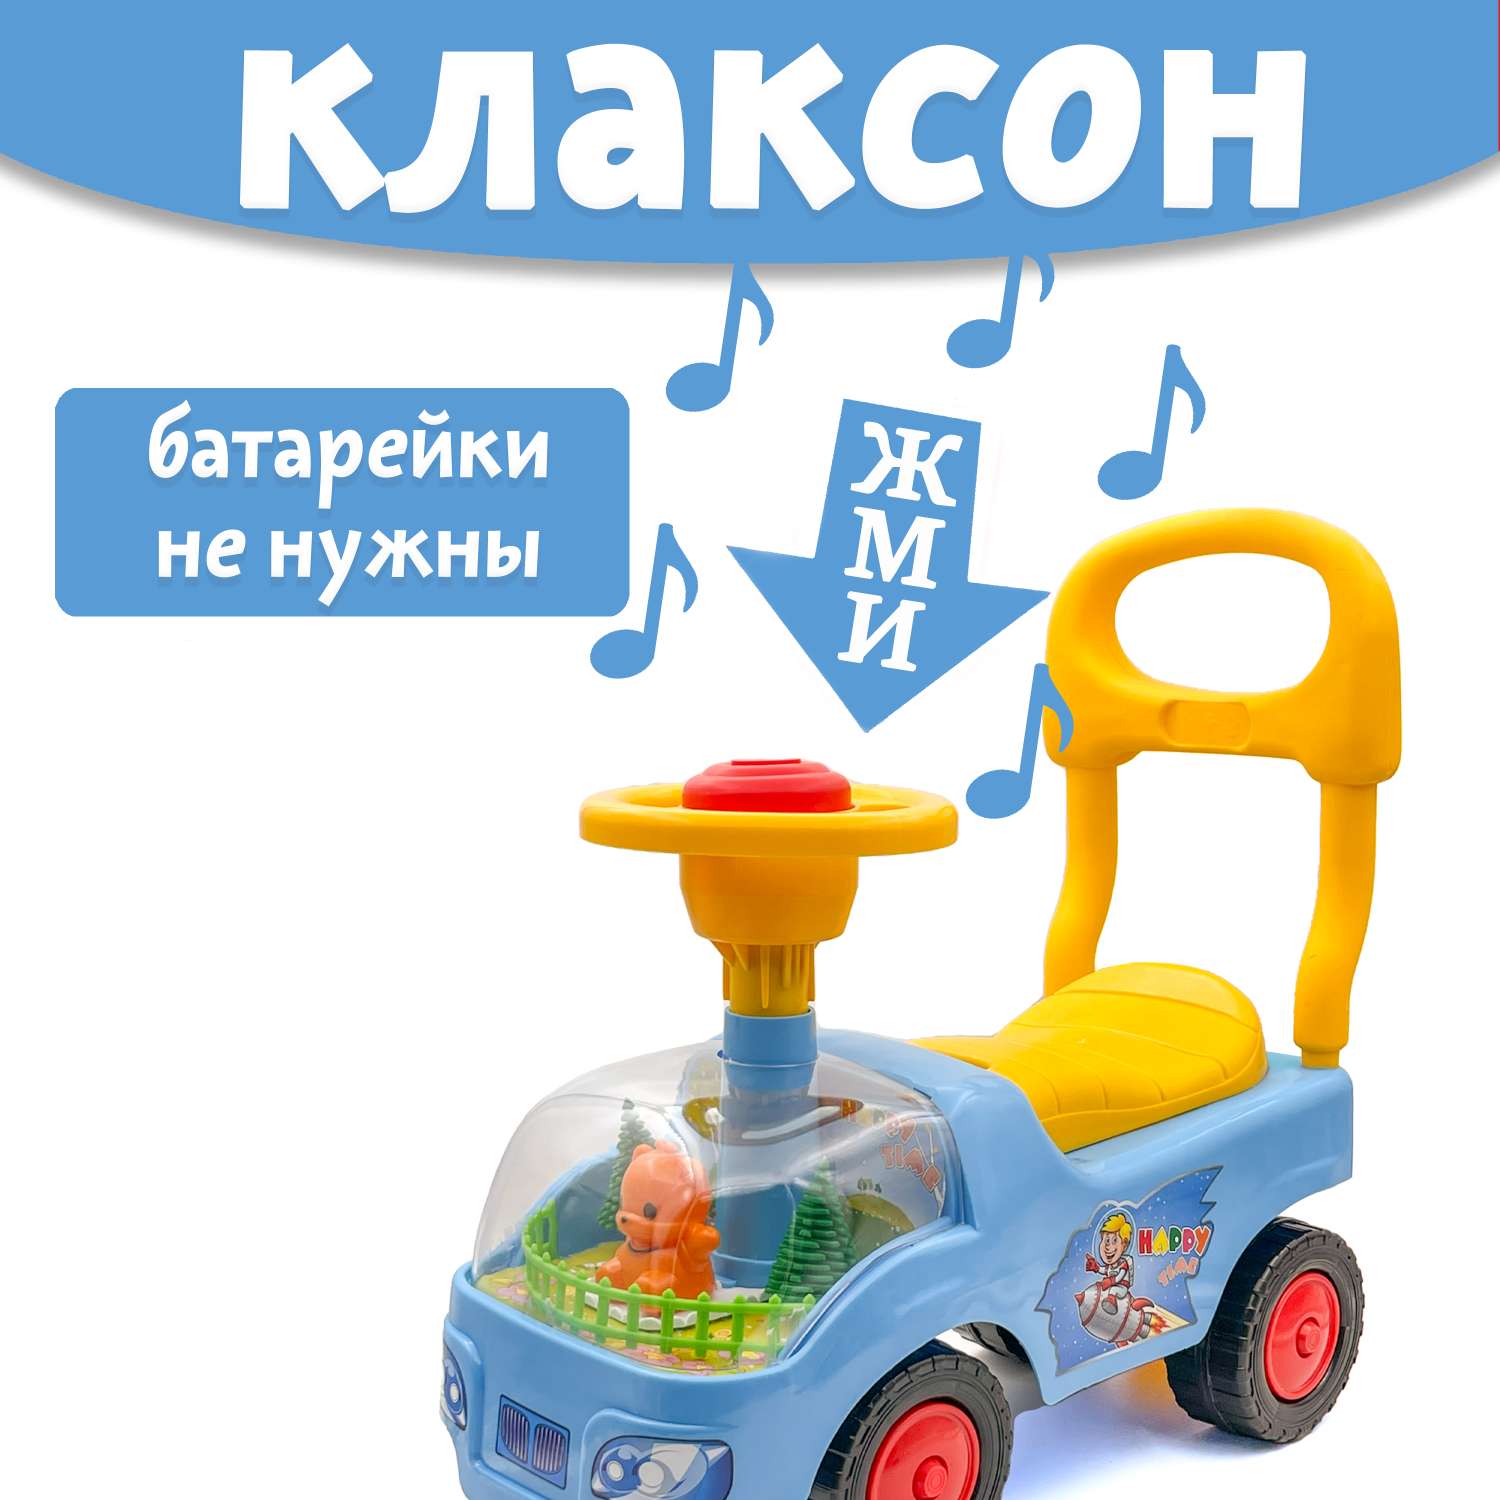 Машина каталка Нижегородская игрушка 134 Голубая - фото 2